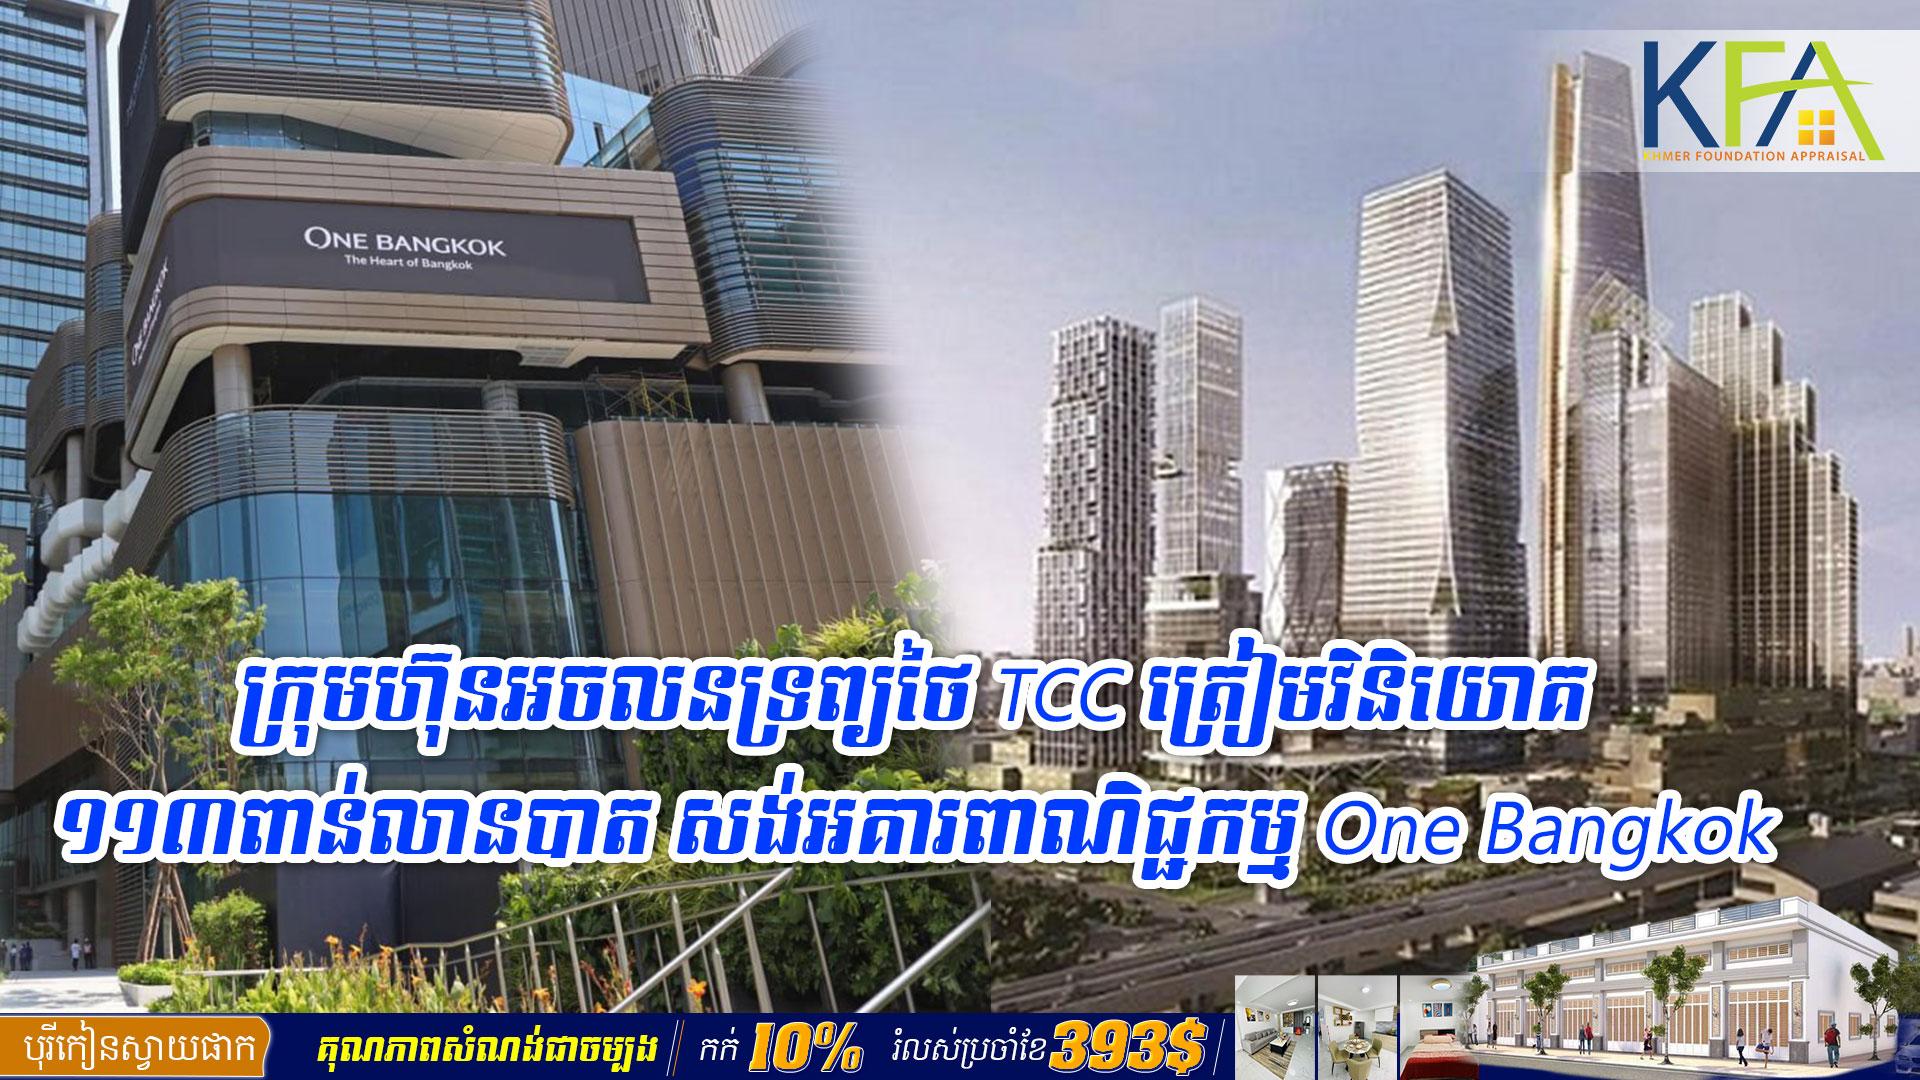 ក្រុមហ៊ុនអចលនទ្រព្យថៃ TCC ត្រៀមវិនិយោគ១១៣ពាន់លានបាត សង់អគារពាណិជ្ជកម្ម One Bangkok